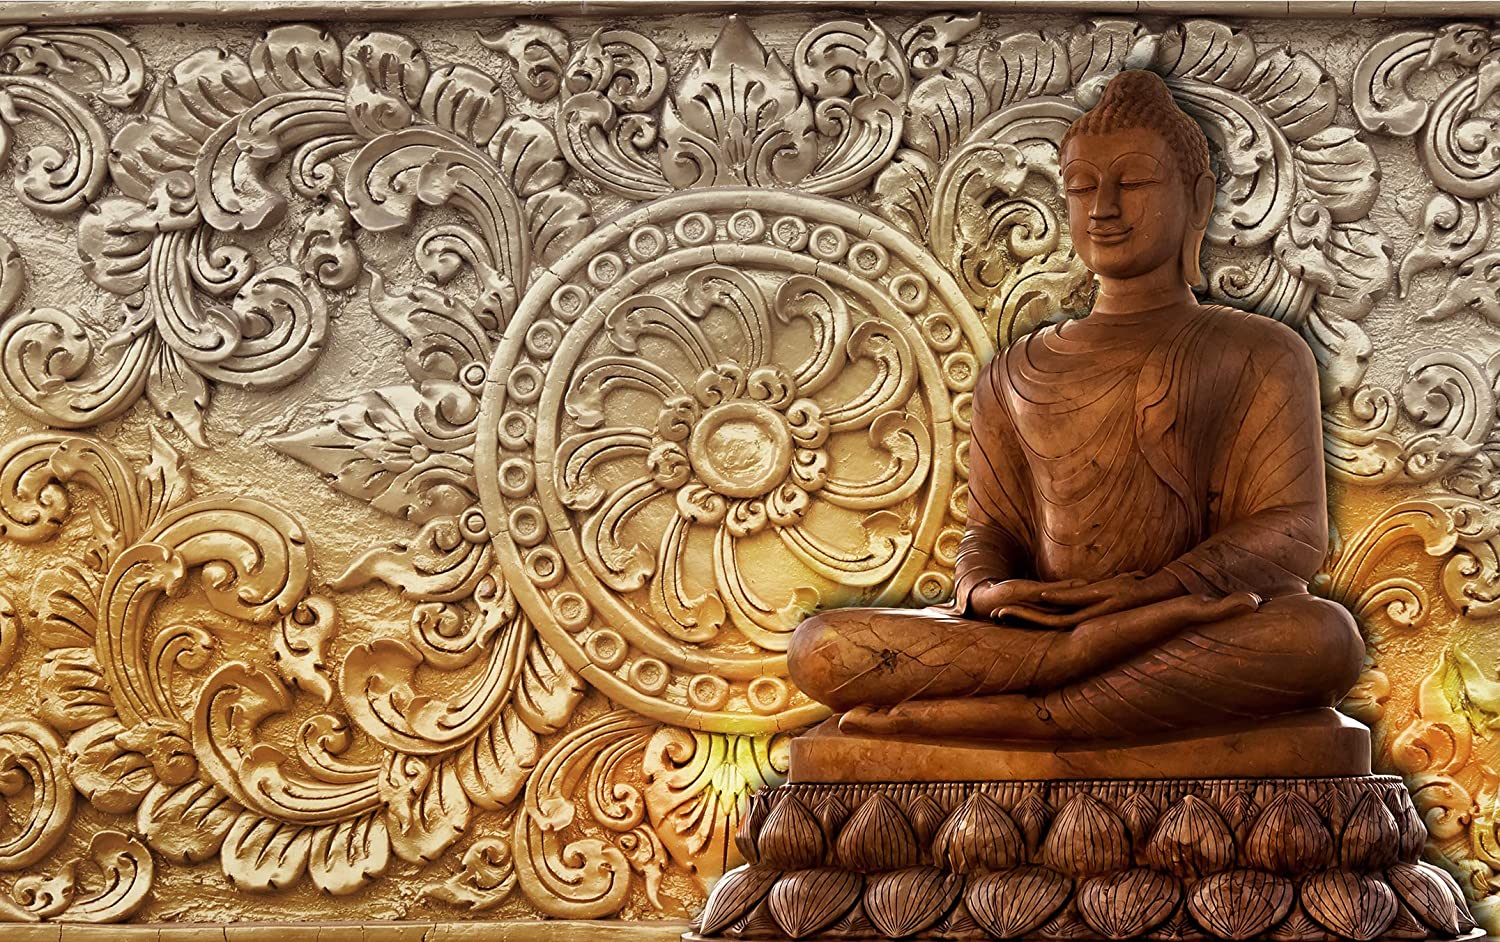 Ảnh Phật Đẹp 3D Chất Lượng Cao Mang Đến Bình An Cho Bạn